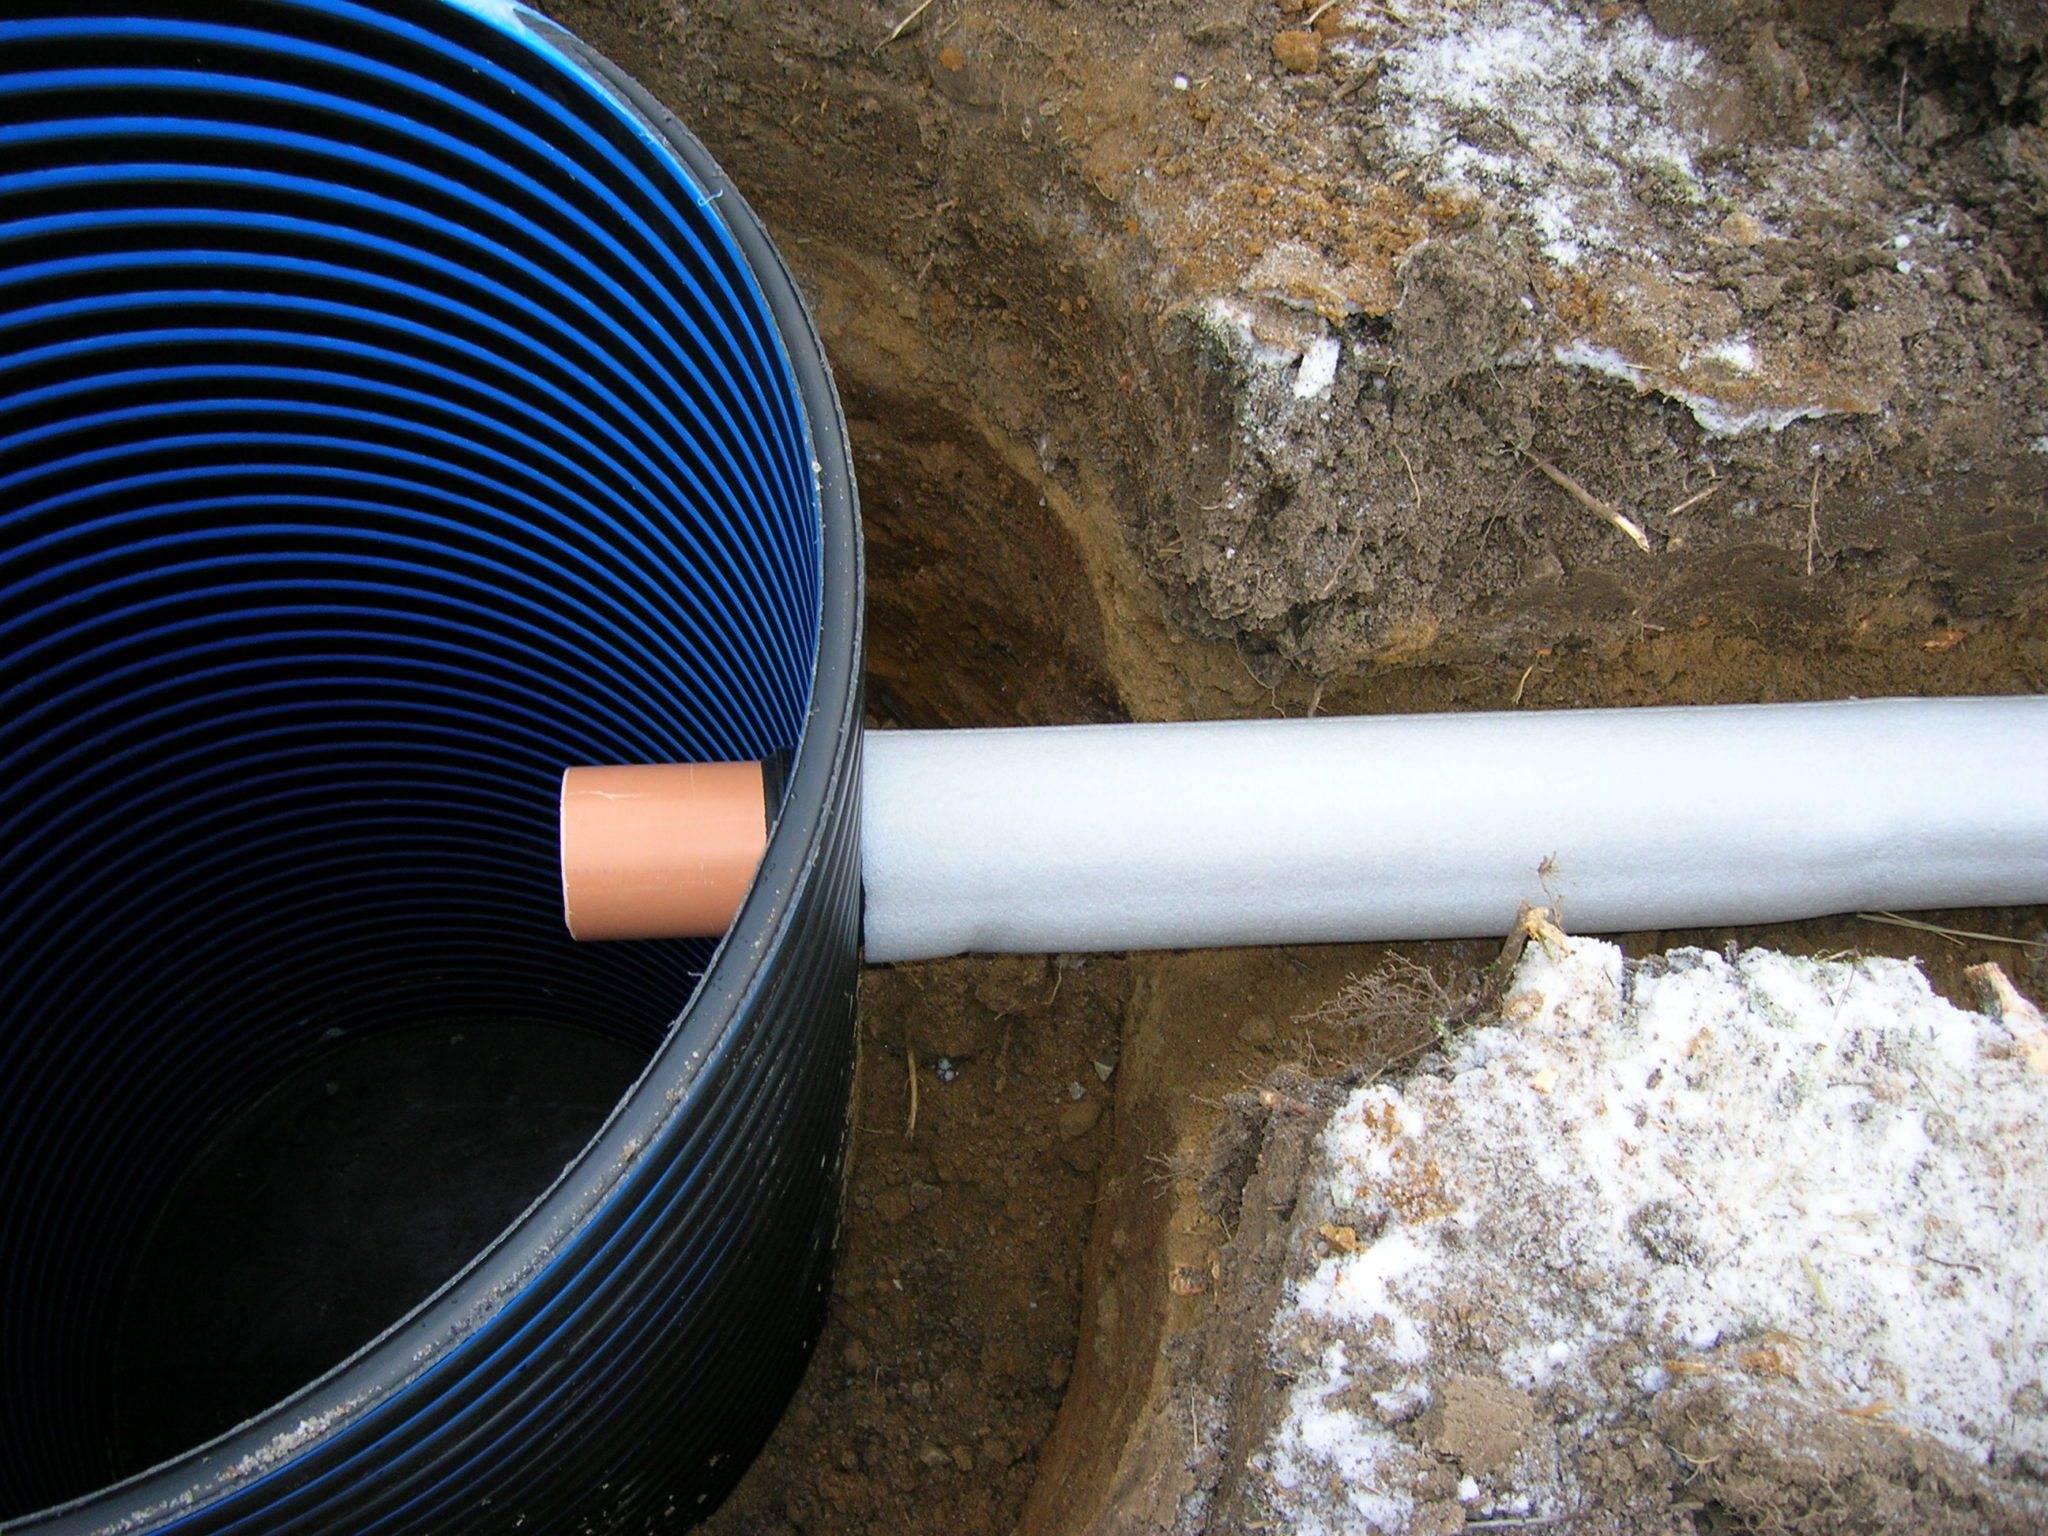 Какую трубу выбрать для прокладки водопровода под землей